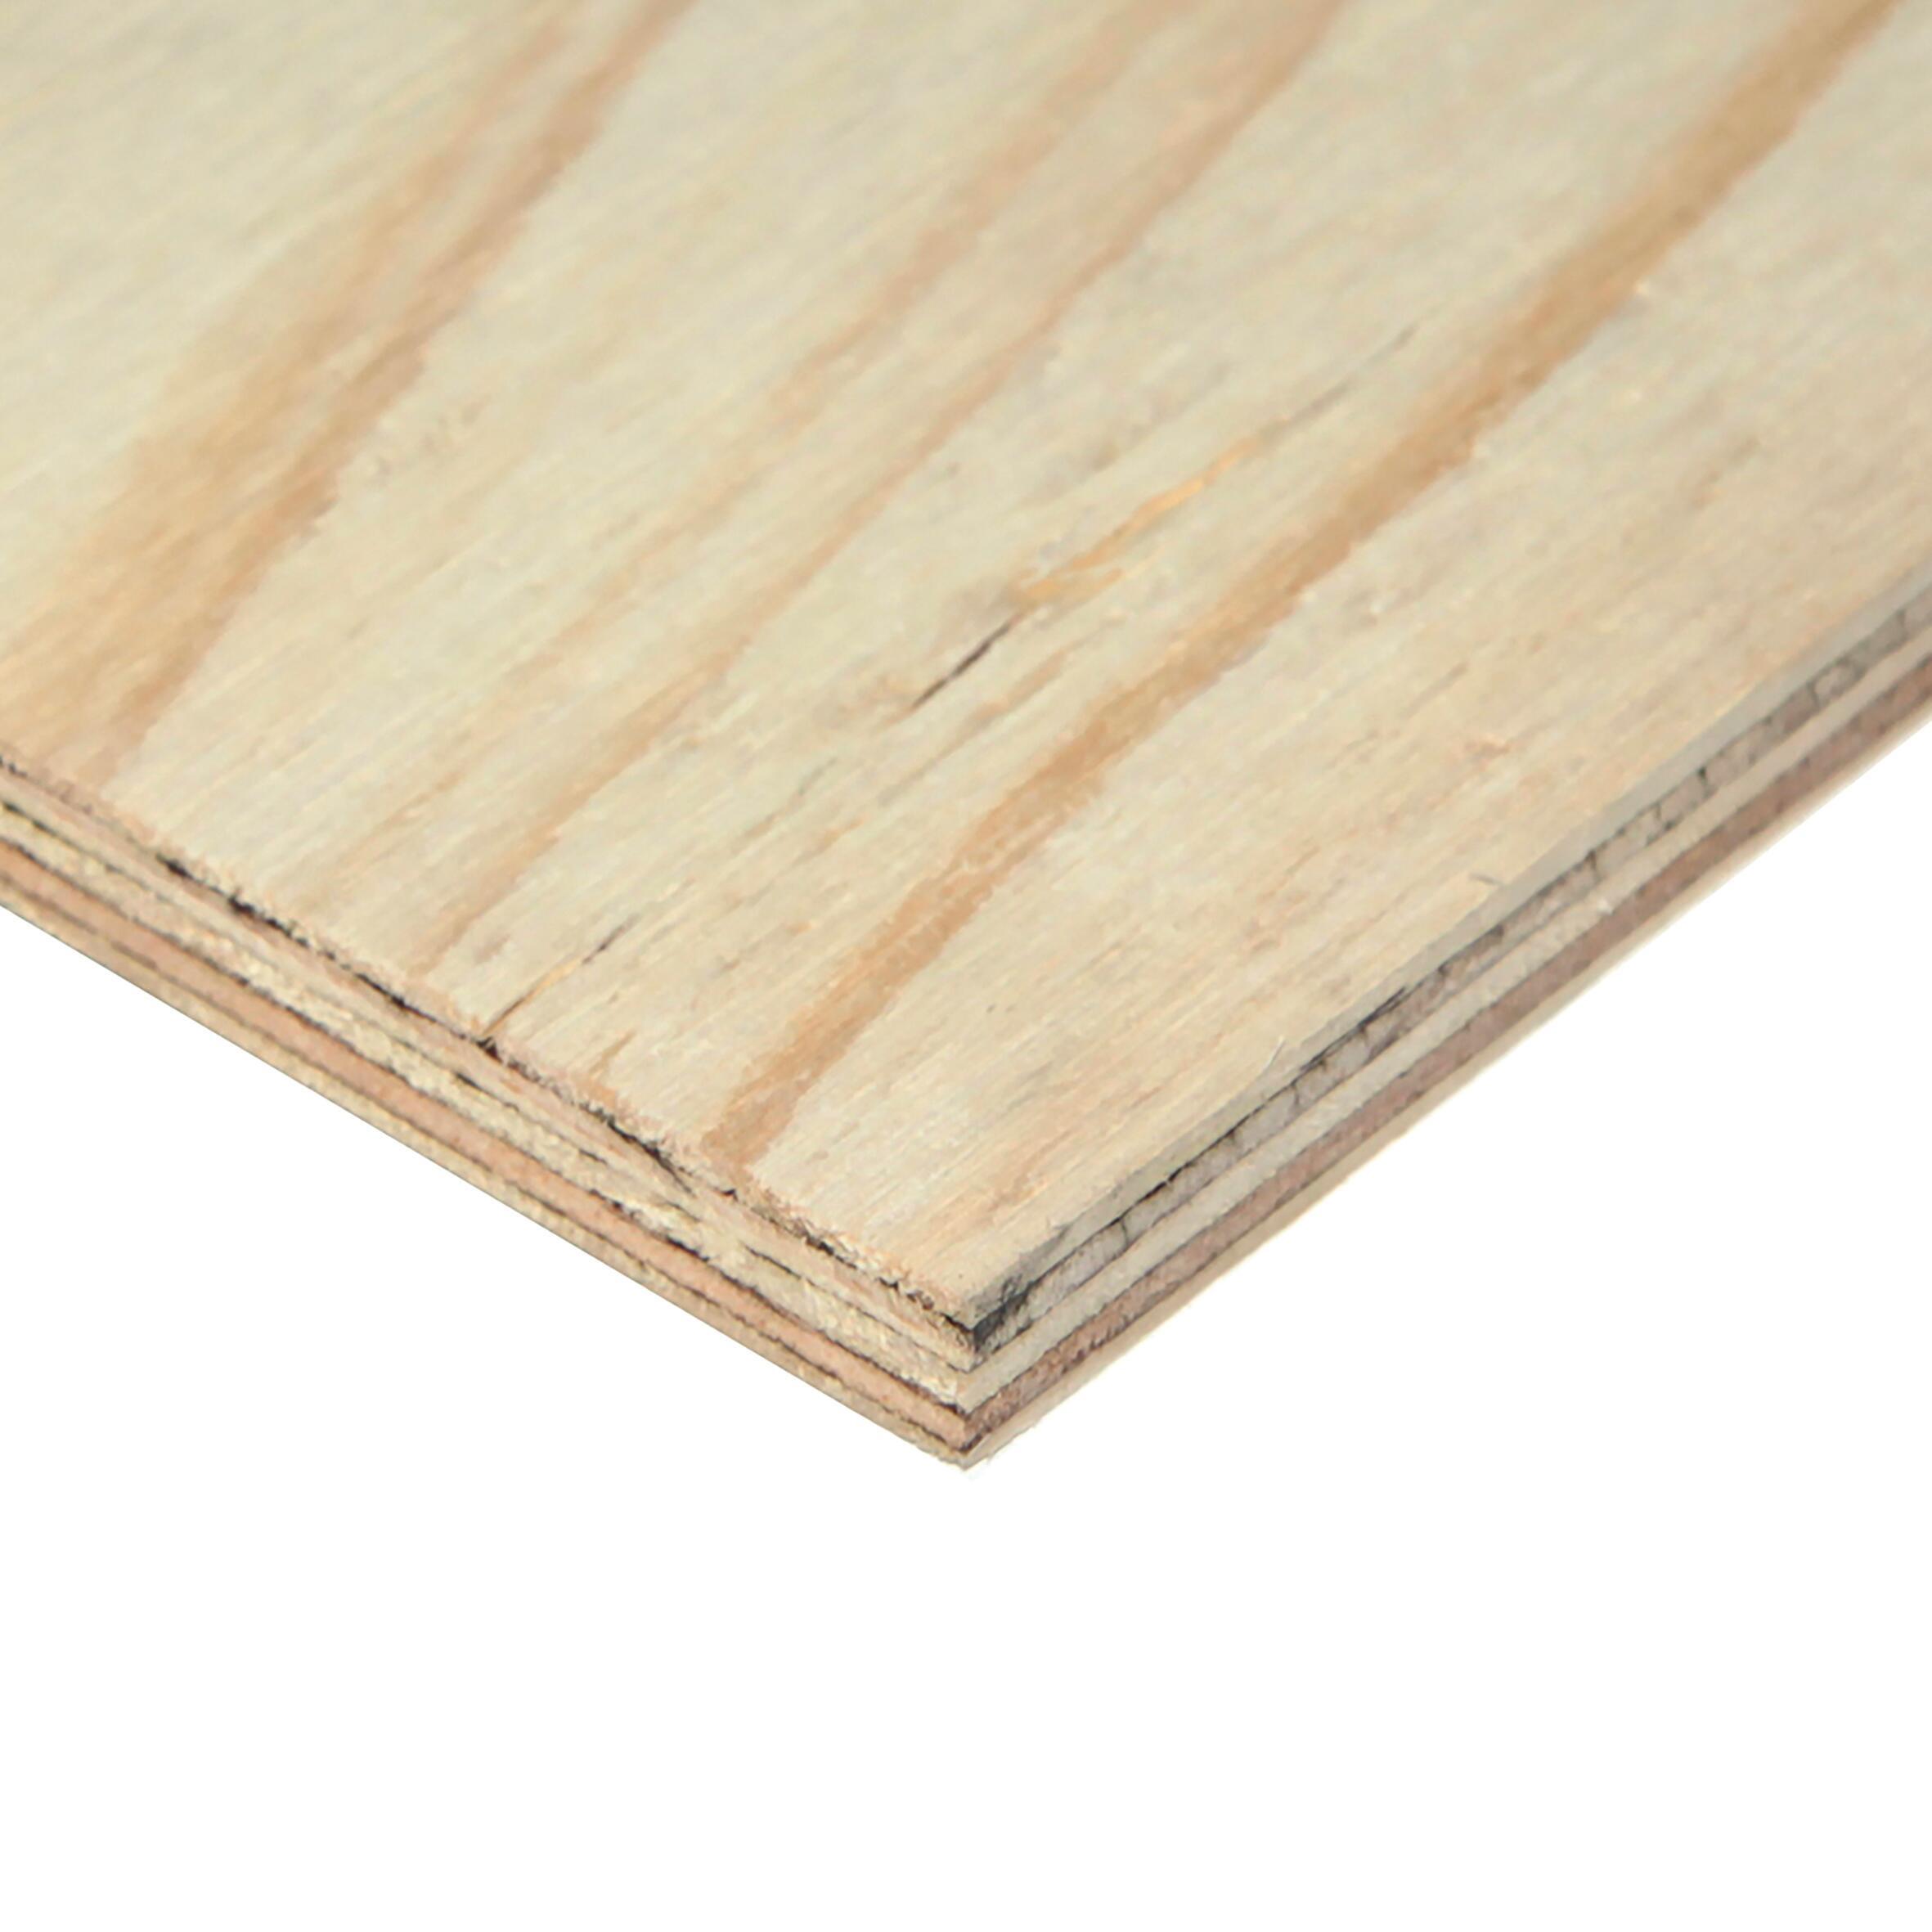 100x30 cm 15mm legno compensato pannelli multistrati tagliati fino a 200cm